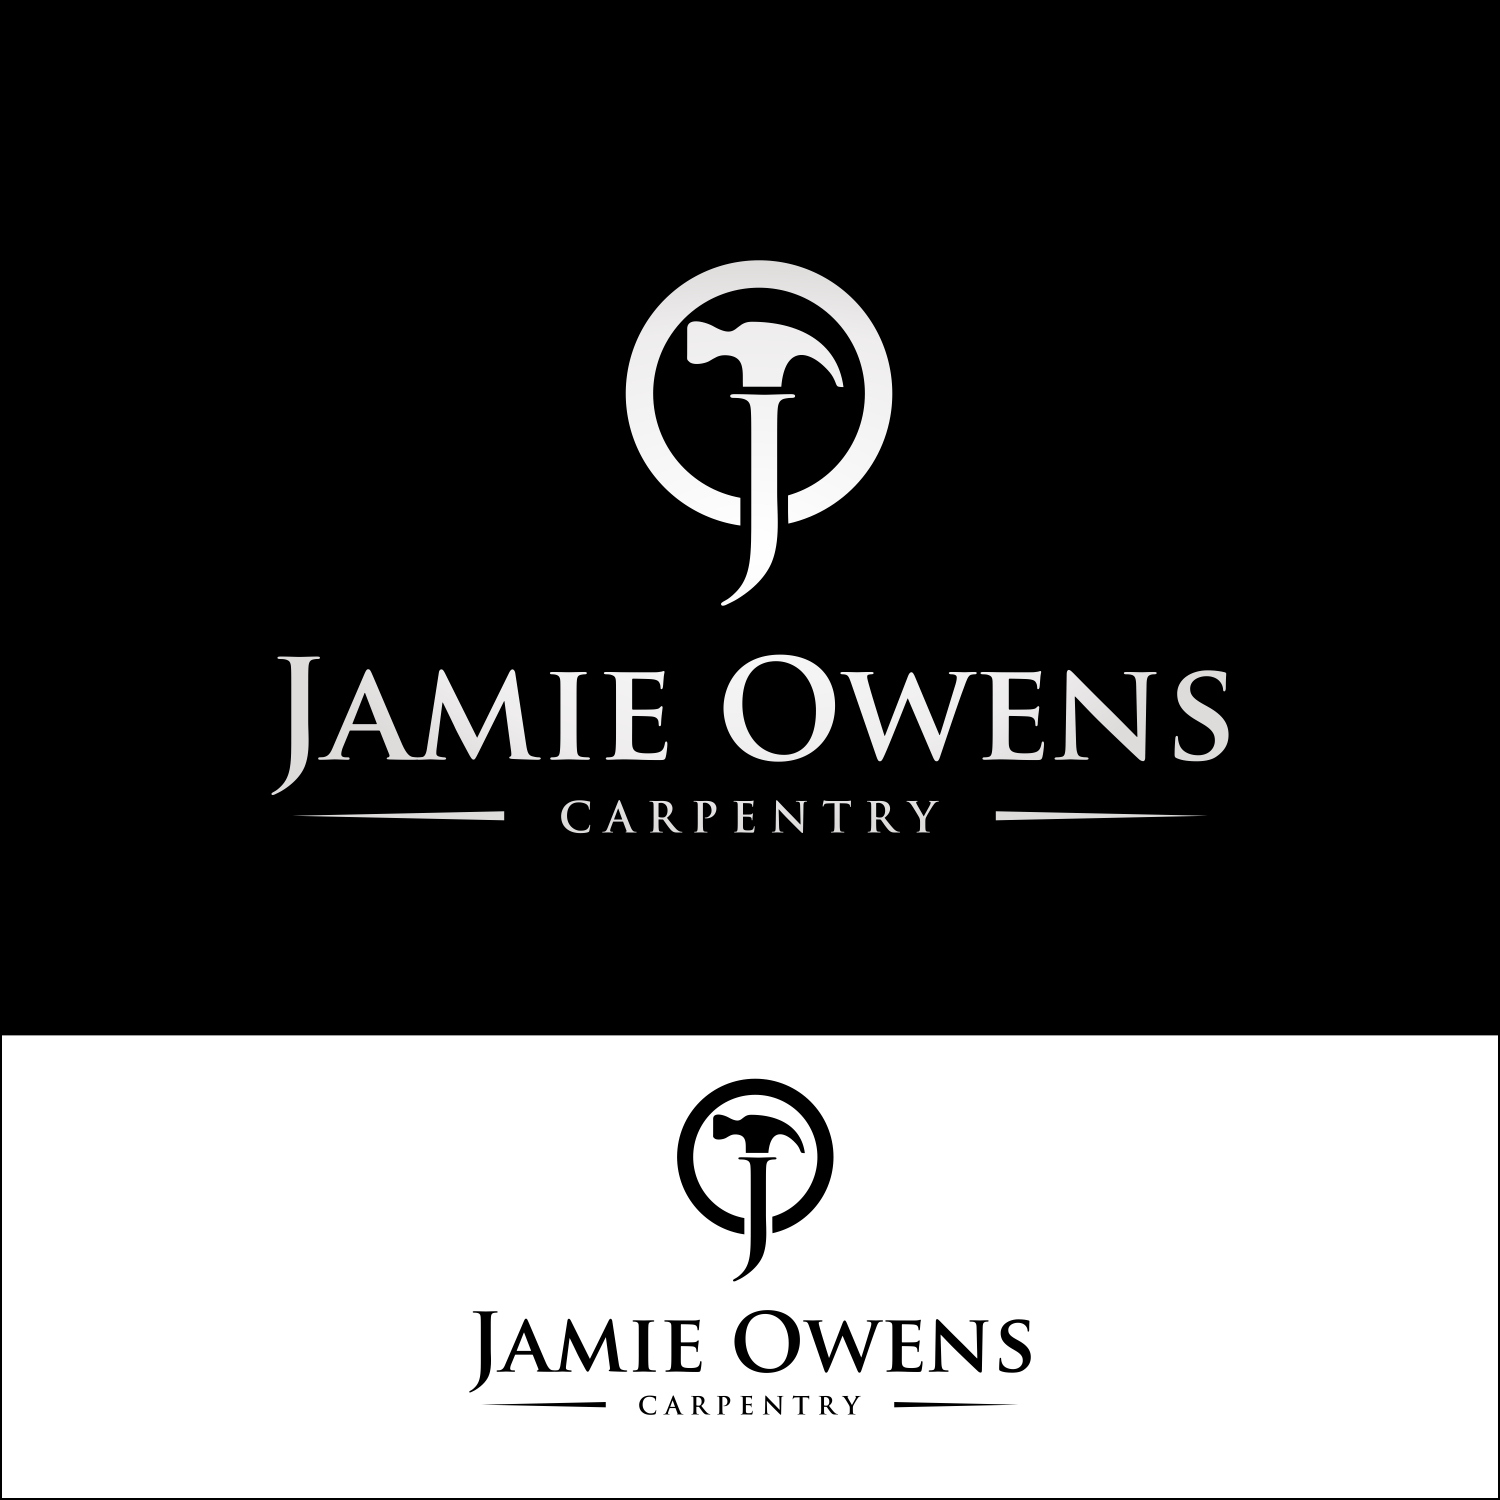 Carpentry Company Logo - Elegant, Playful, Carpentry Logo Design for Jamie Owens Carpentry by ...